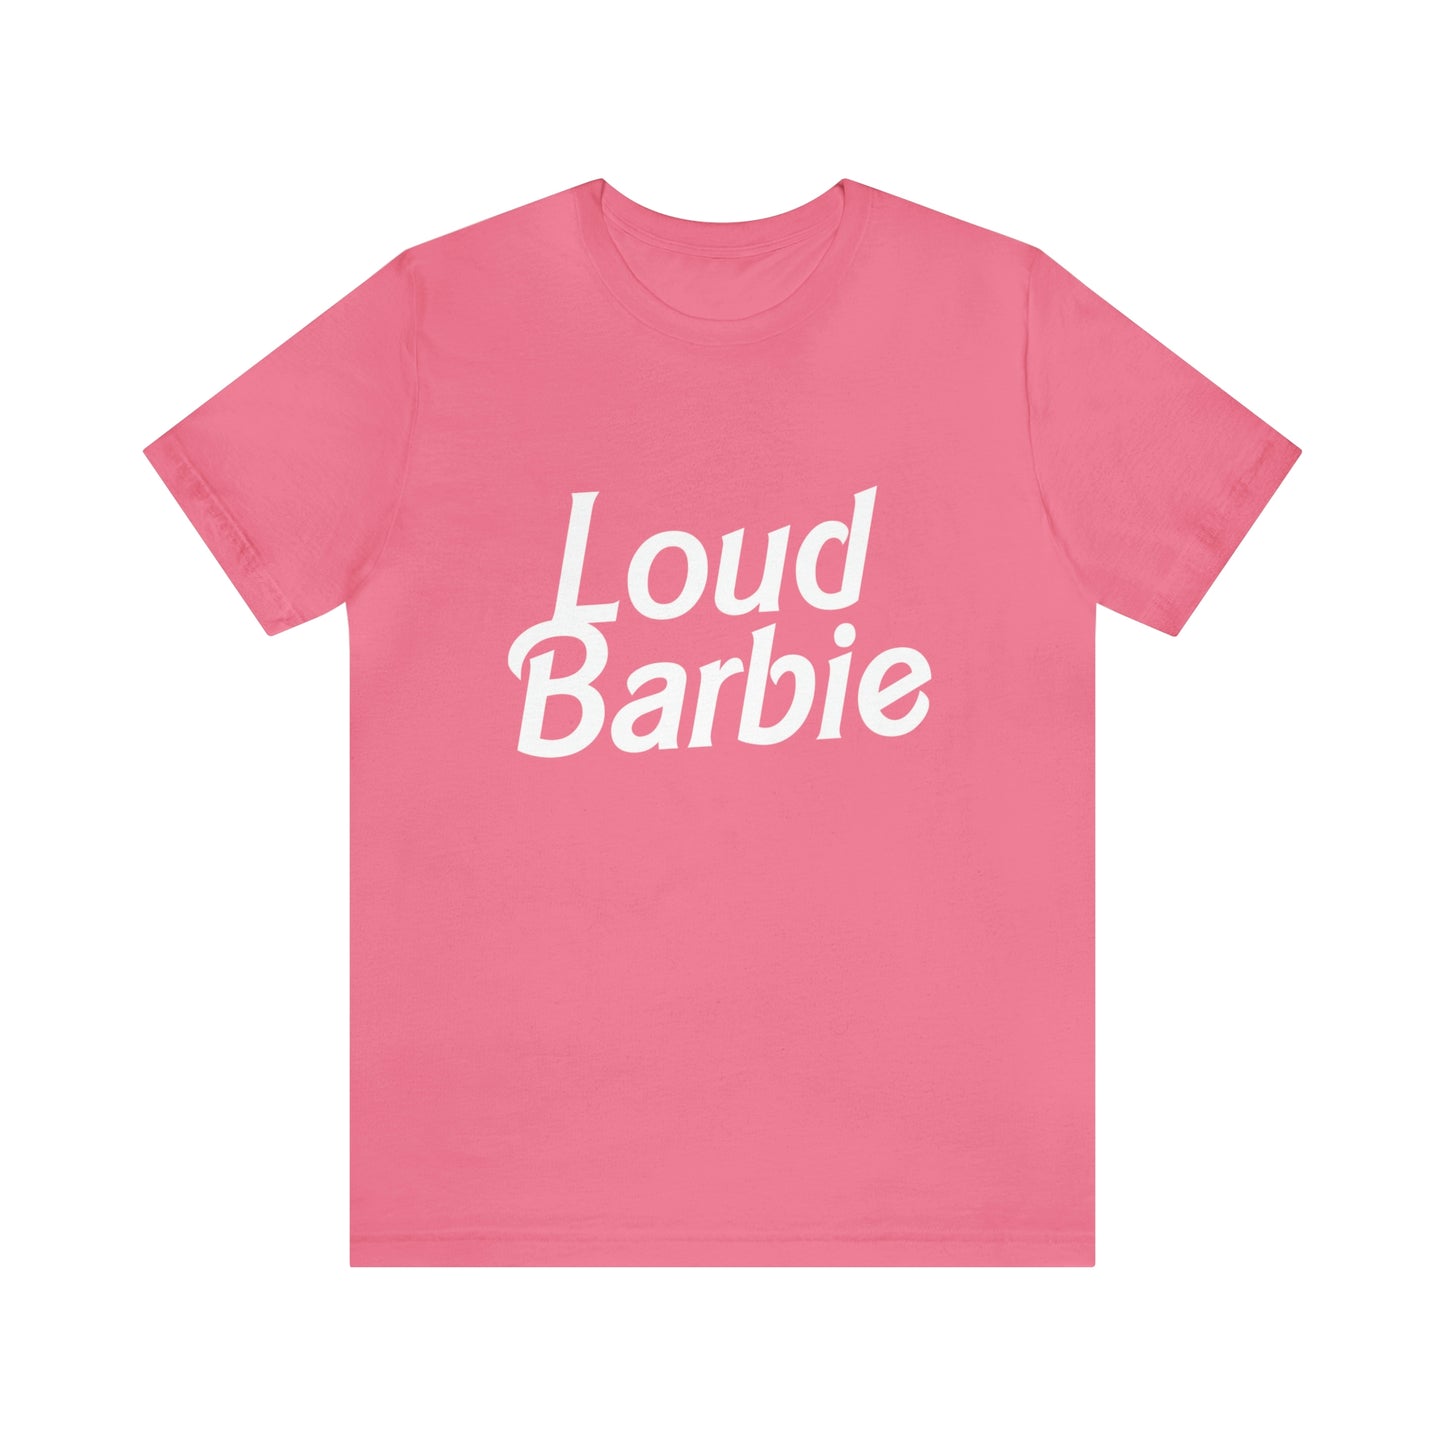 Loud Barbie